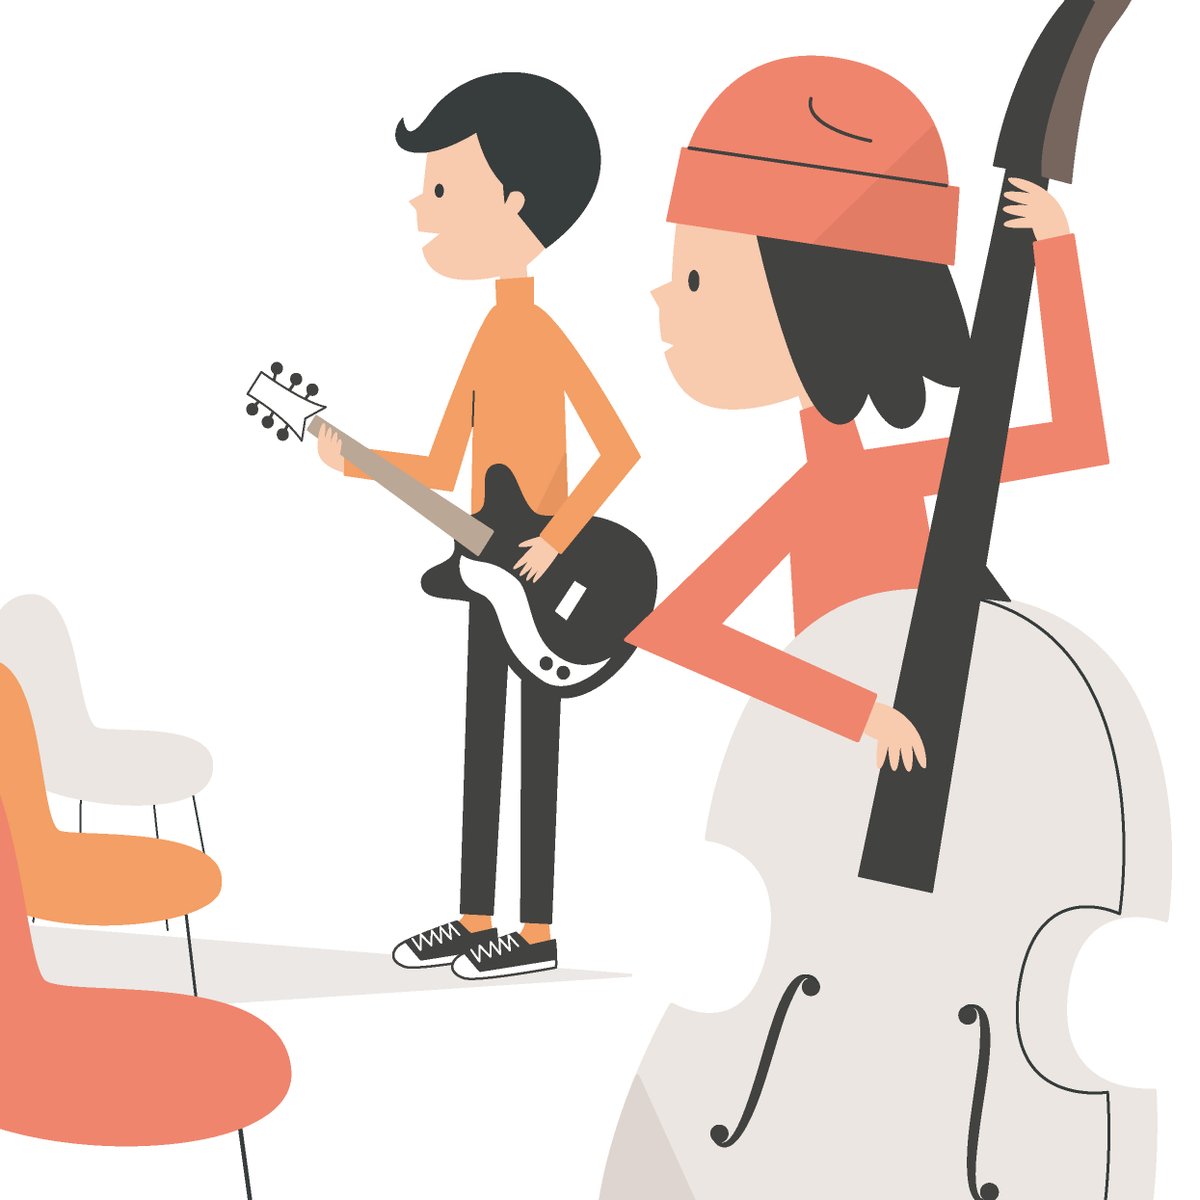 「ニット帽のベーシストと、左利きのギター。 #イラスト #illustration」|こばやしまさとのイラスト